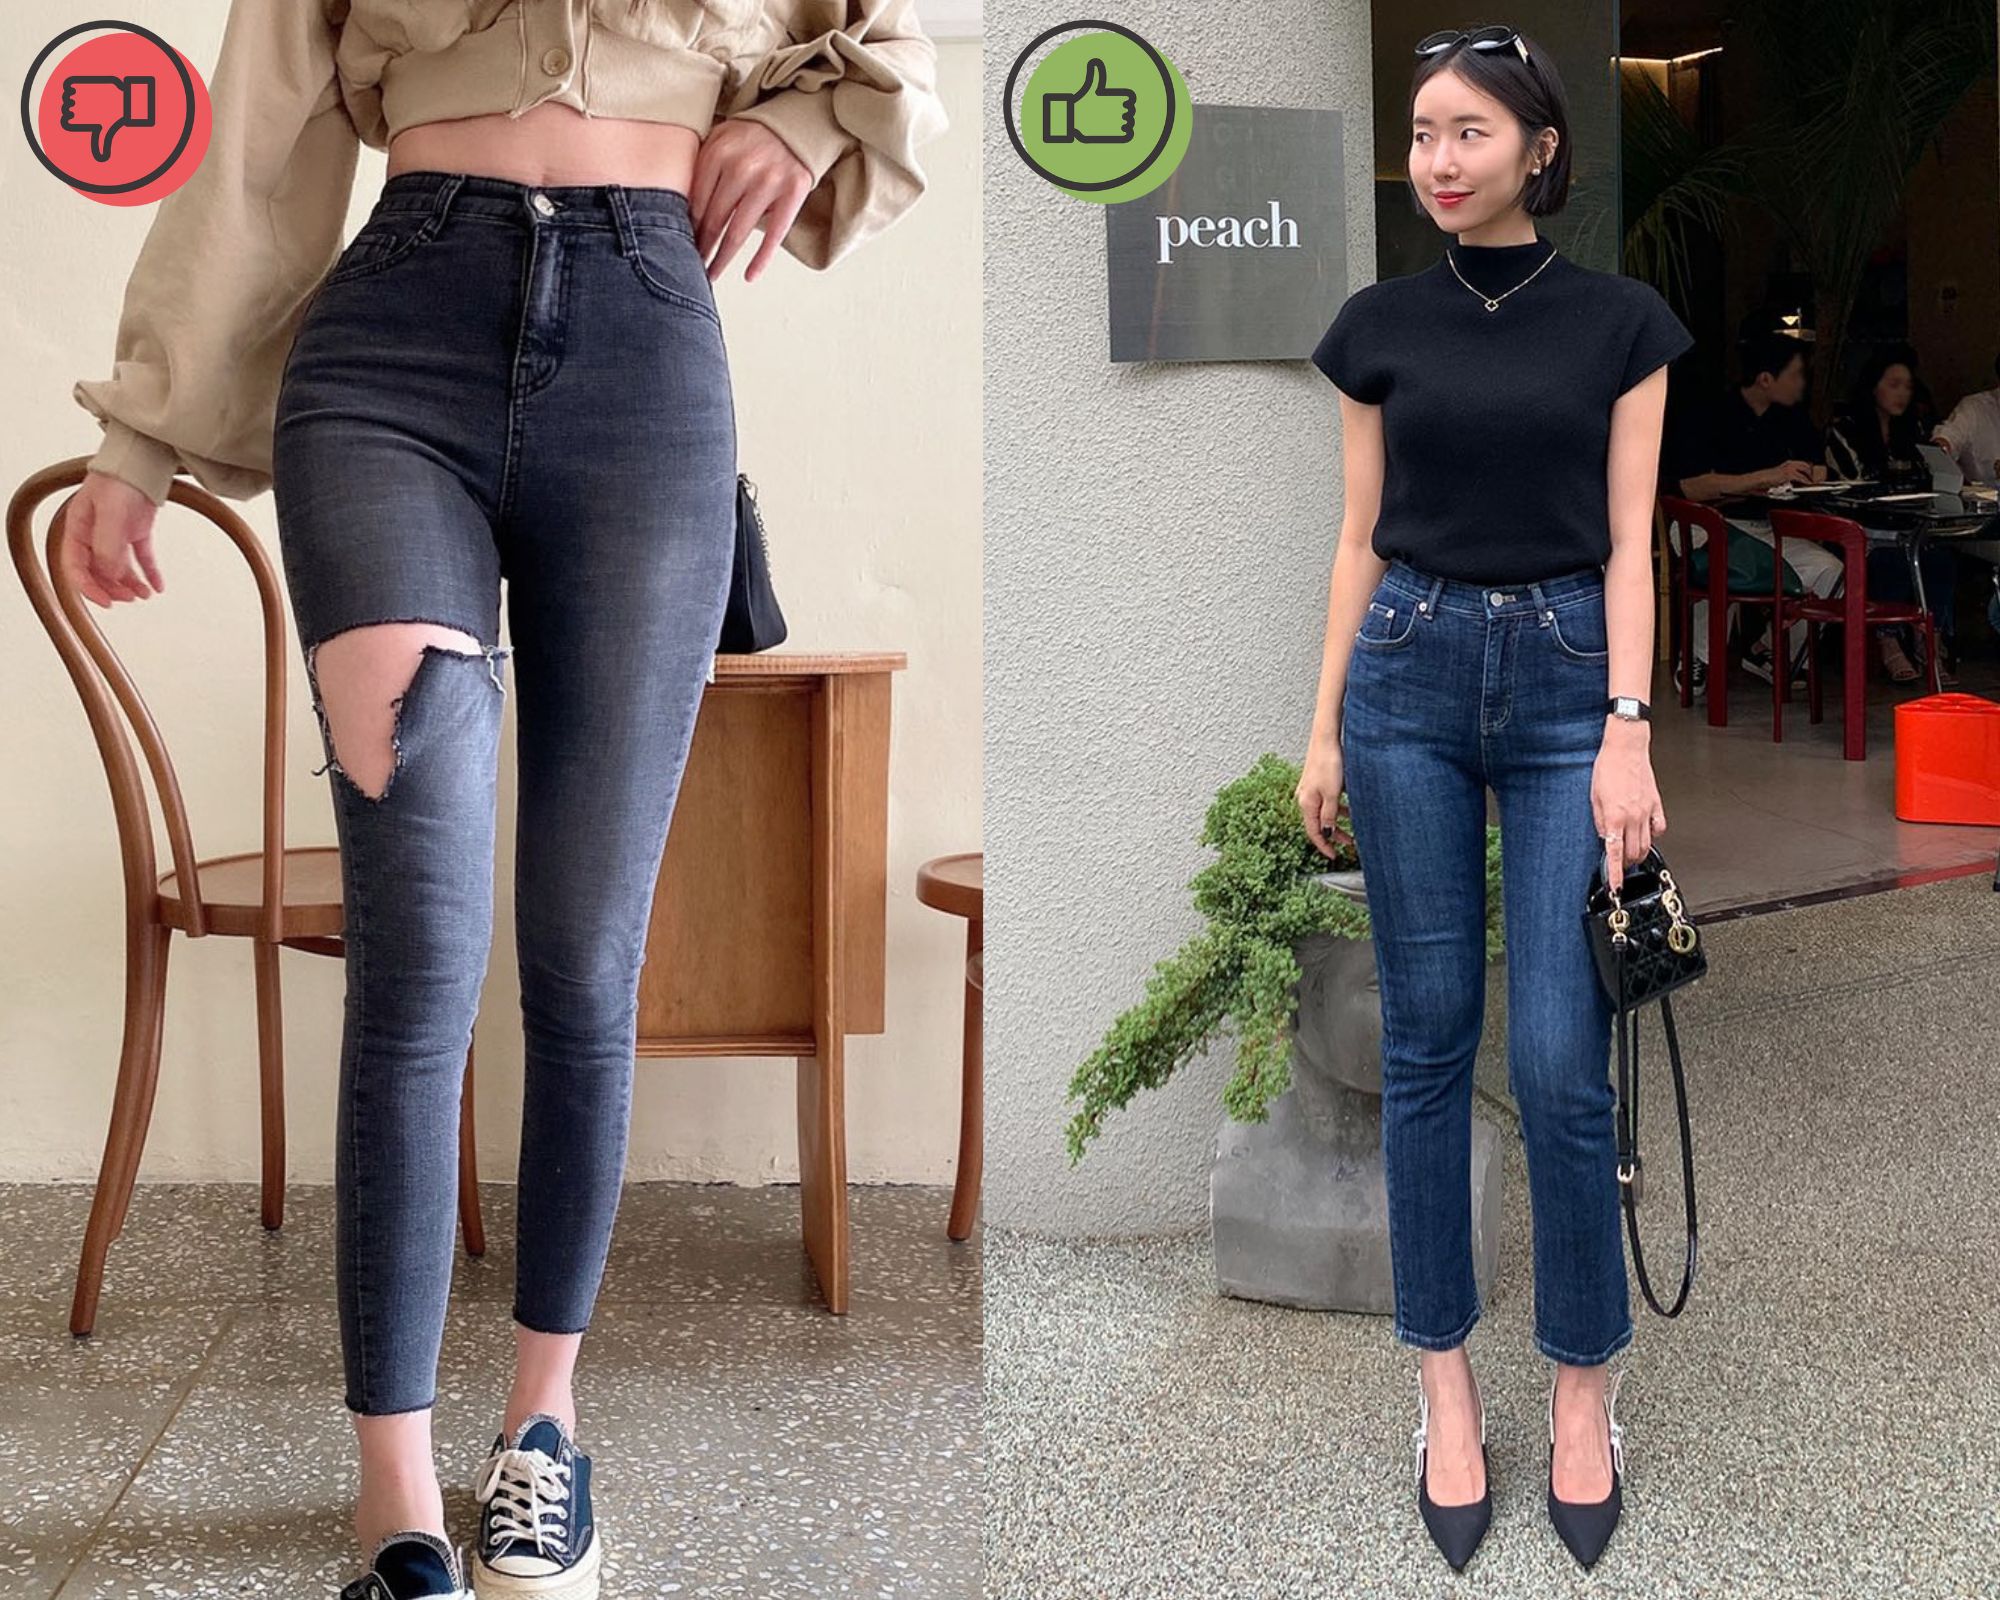 4 mẫu quần jeans lỗi mốt, khiến phong cách kém sành điệu - Ảnh 4.